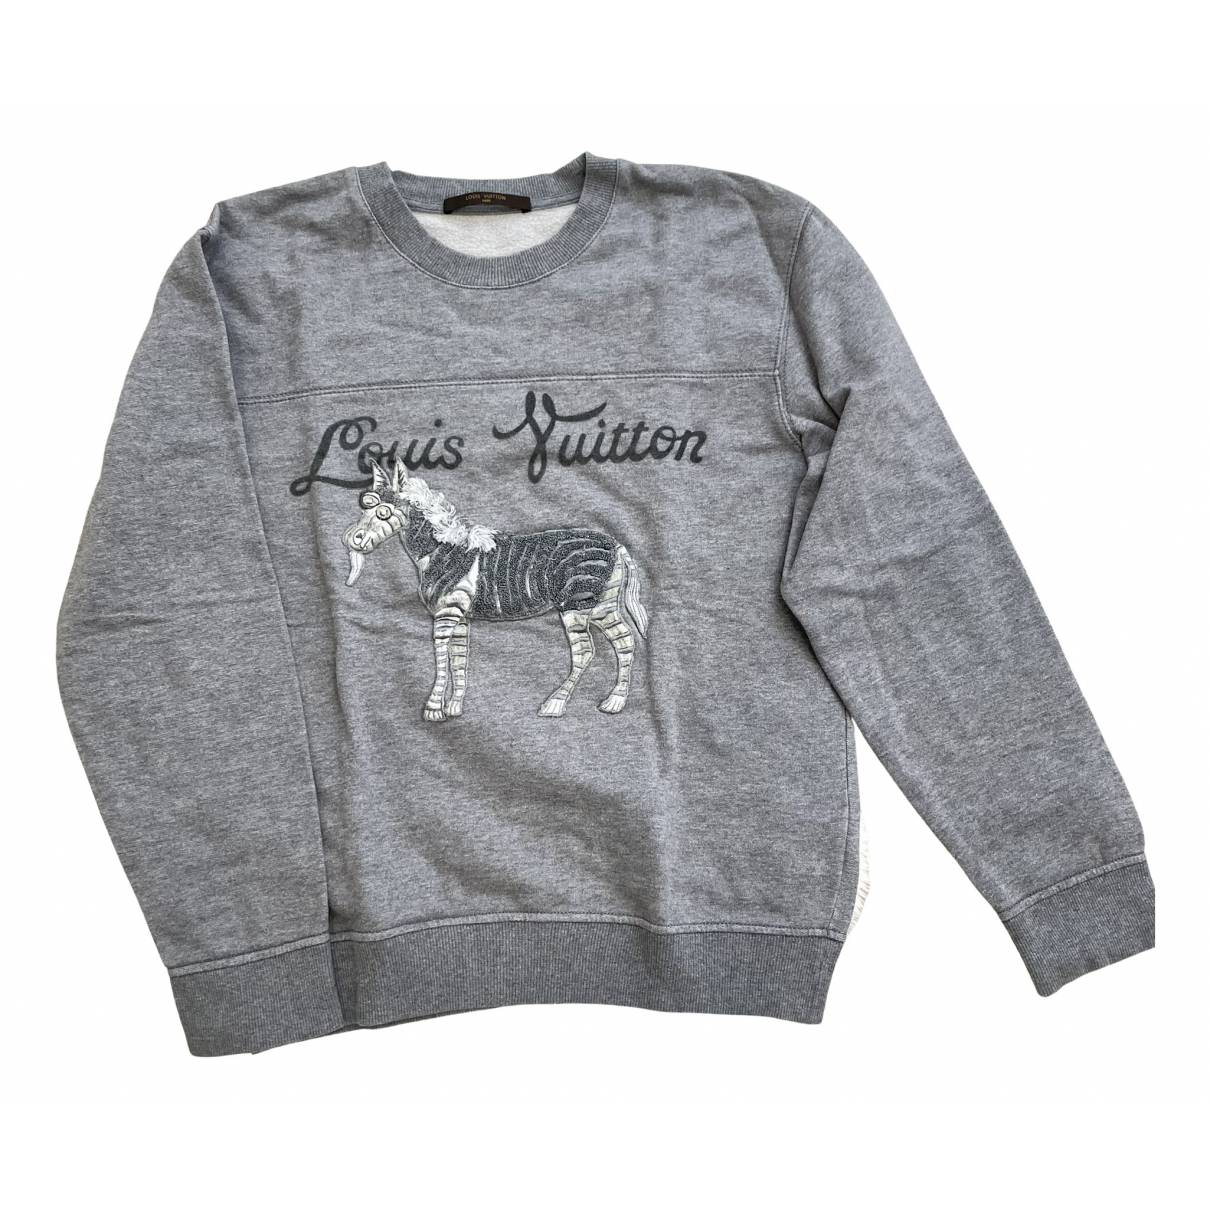 Sweatshirt Louis Vuitton Grey size S International in Cotton - 29923957